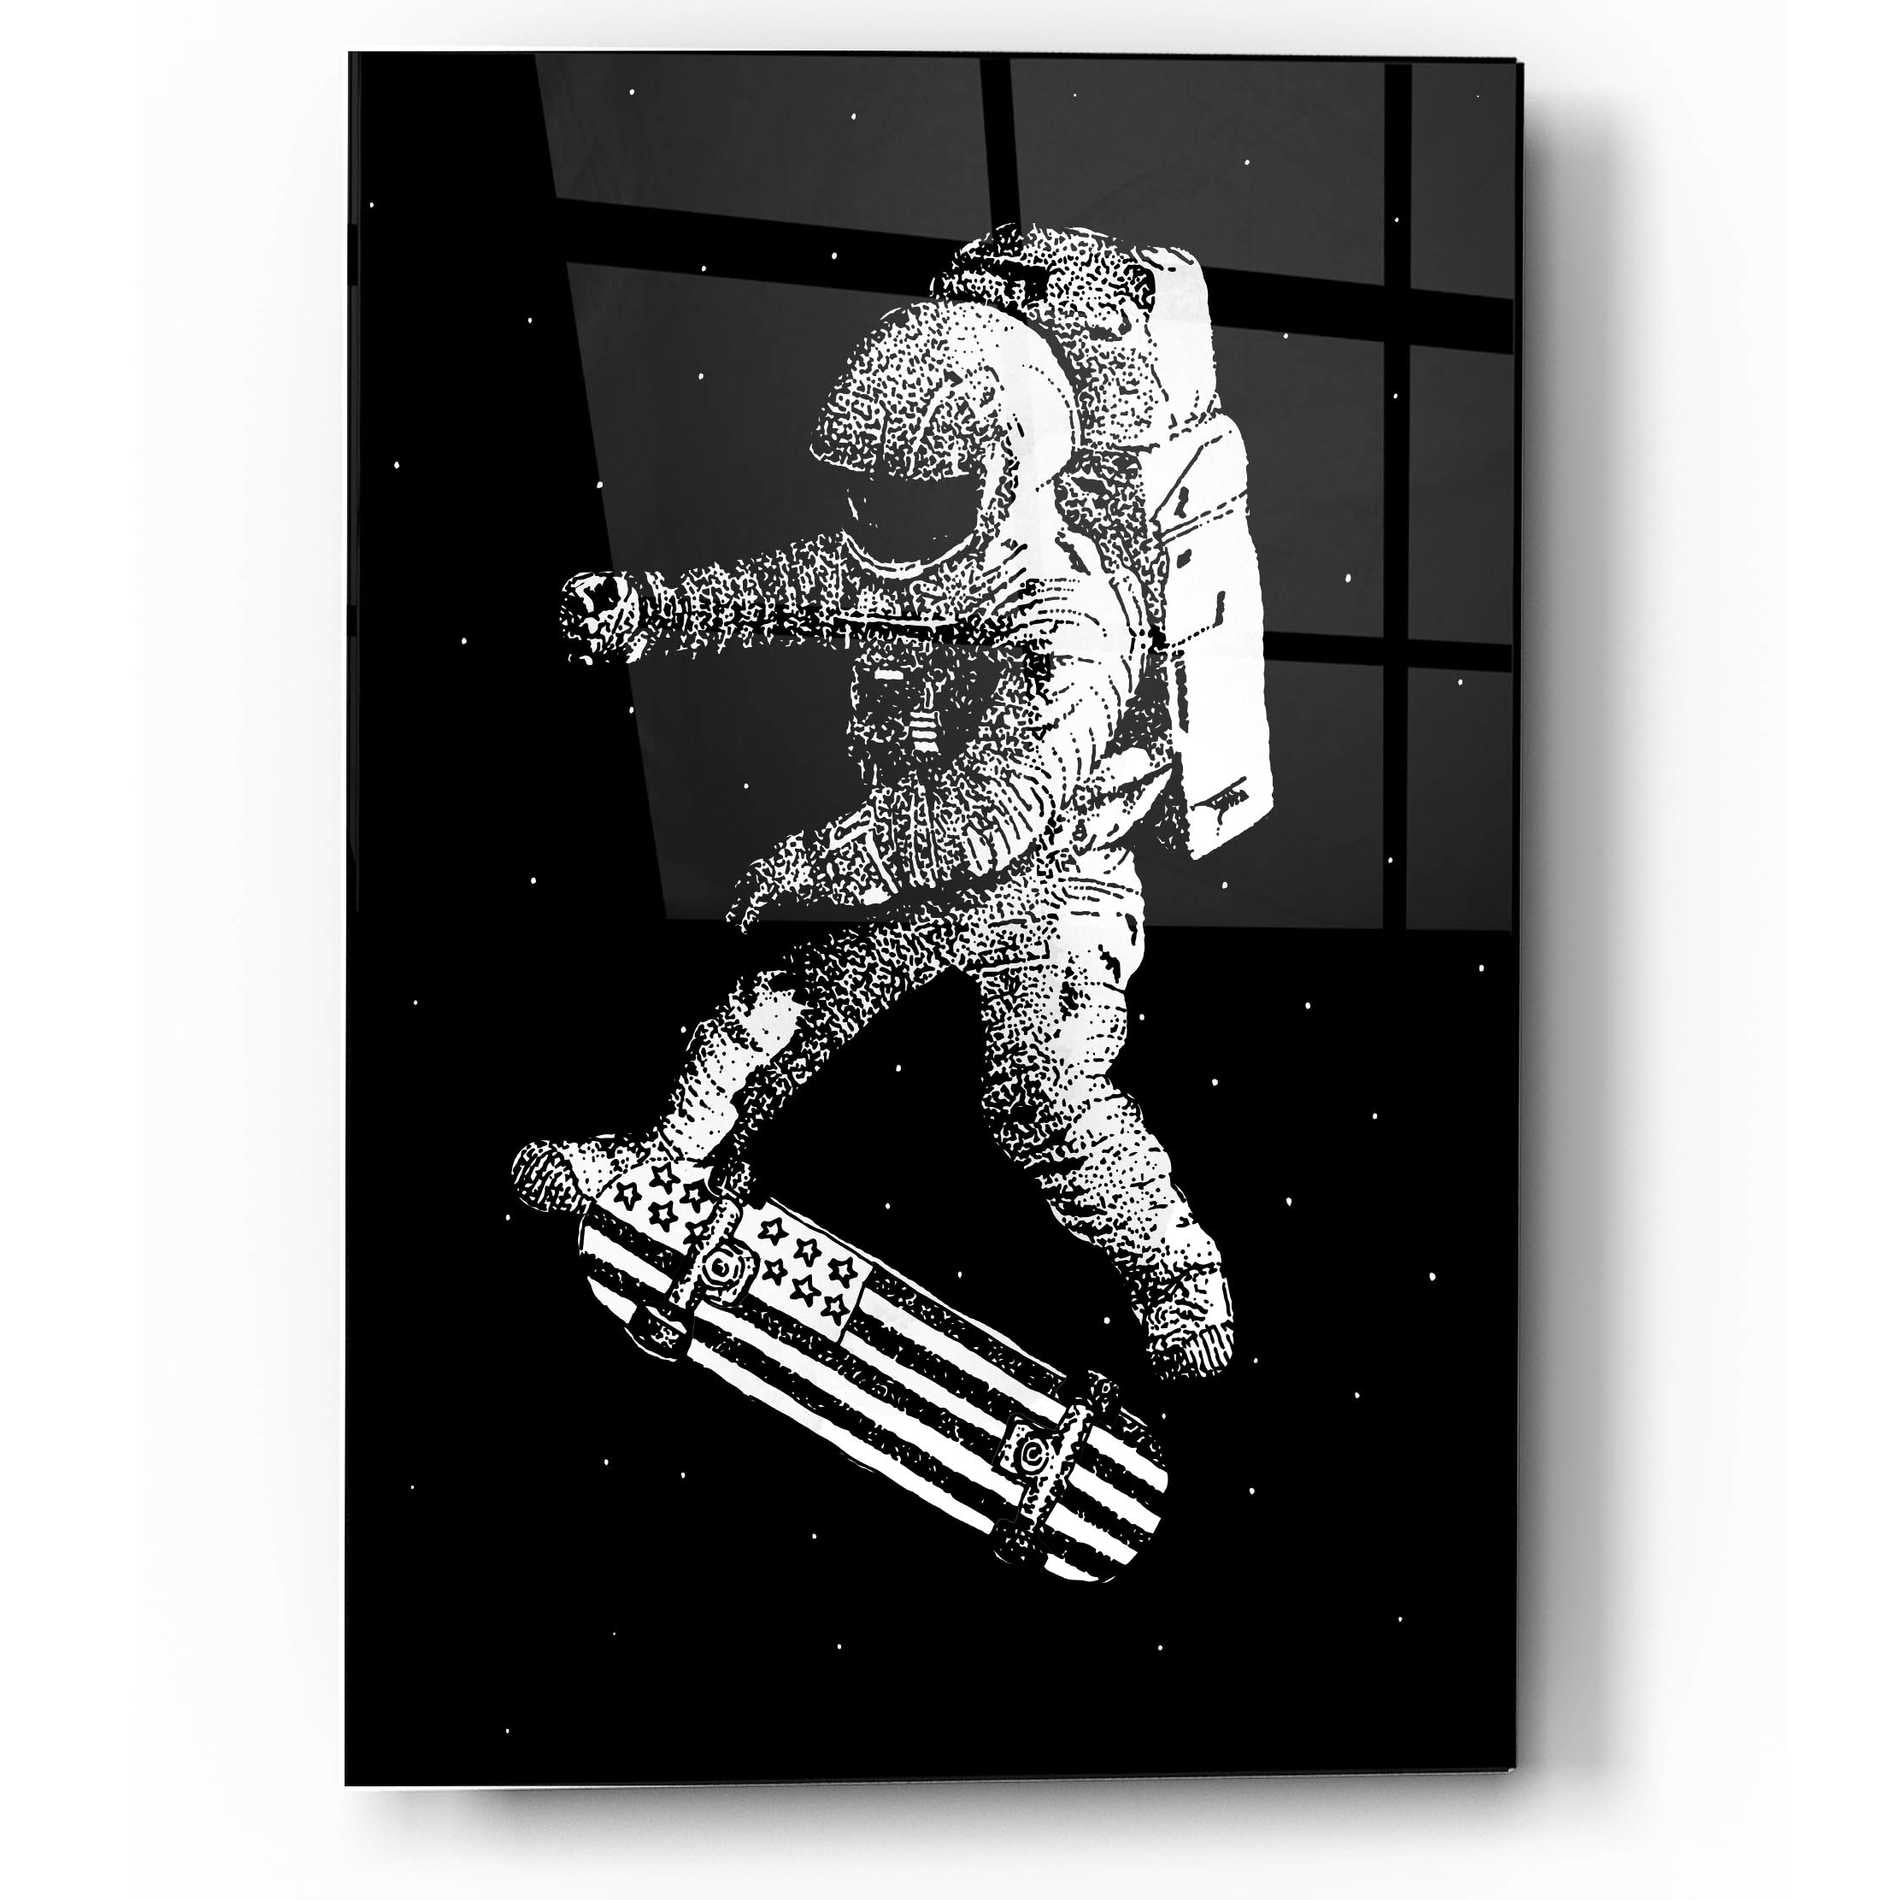 Epic Art 'Kickflip in Space' by Robert Farkas, Acrylic Glass Wall Art,12x16